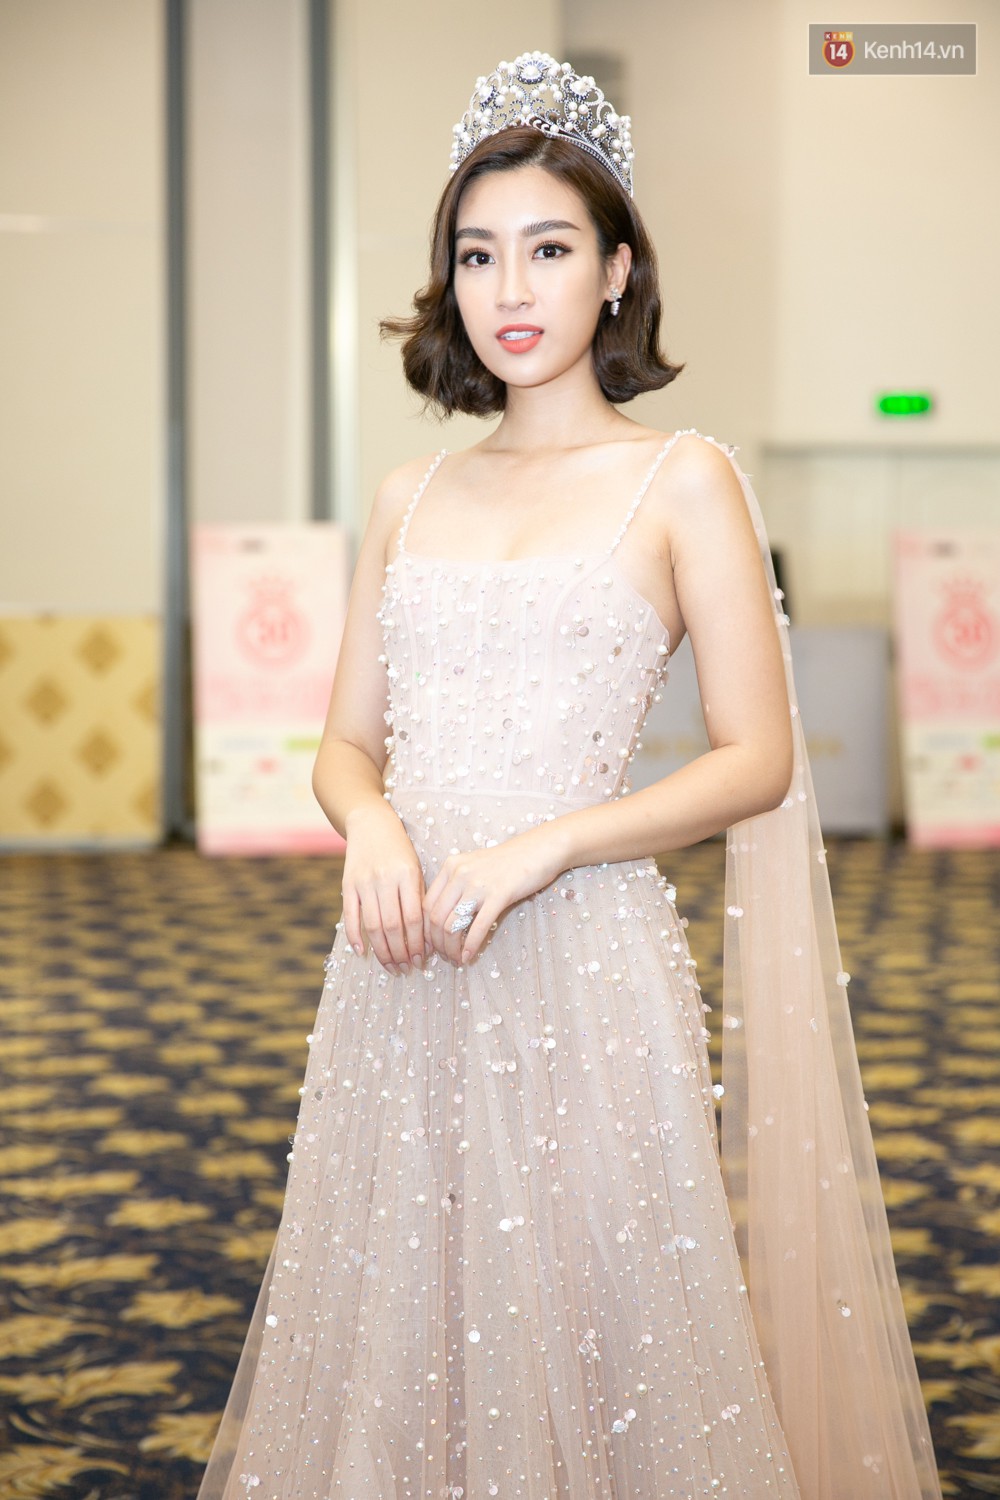 Trước thềm chung kết, hé lộ cận cảnh vương miện, quyền trượng giá trị của Tân Hoa hậu Việt Nam 2018 1